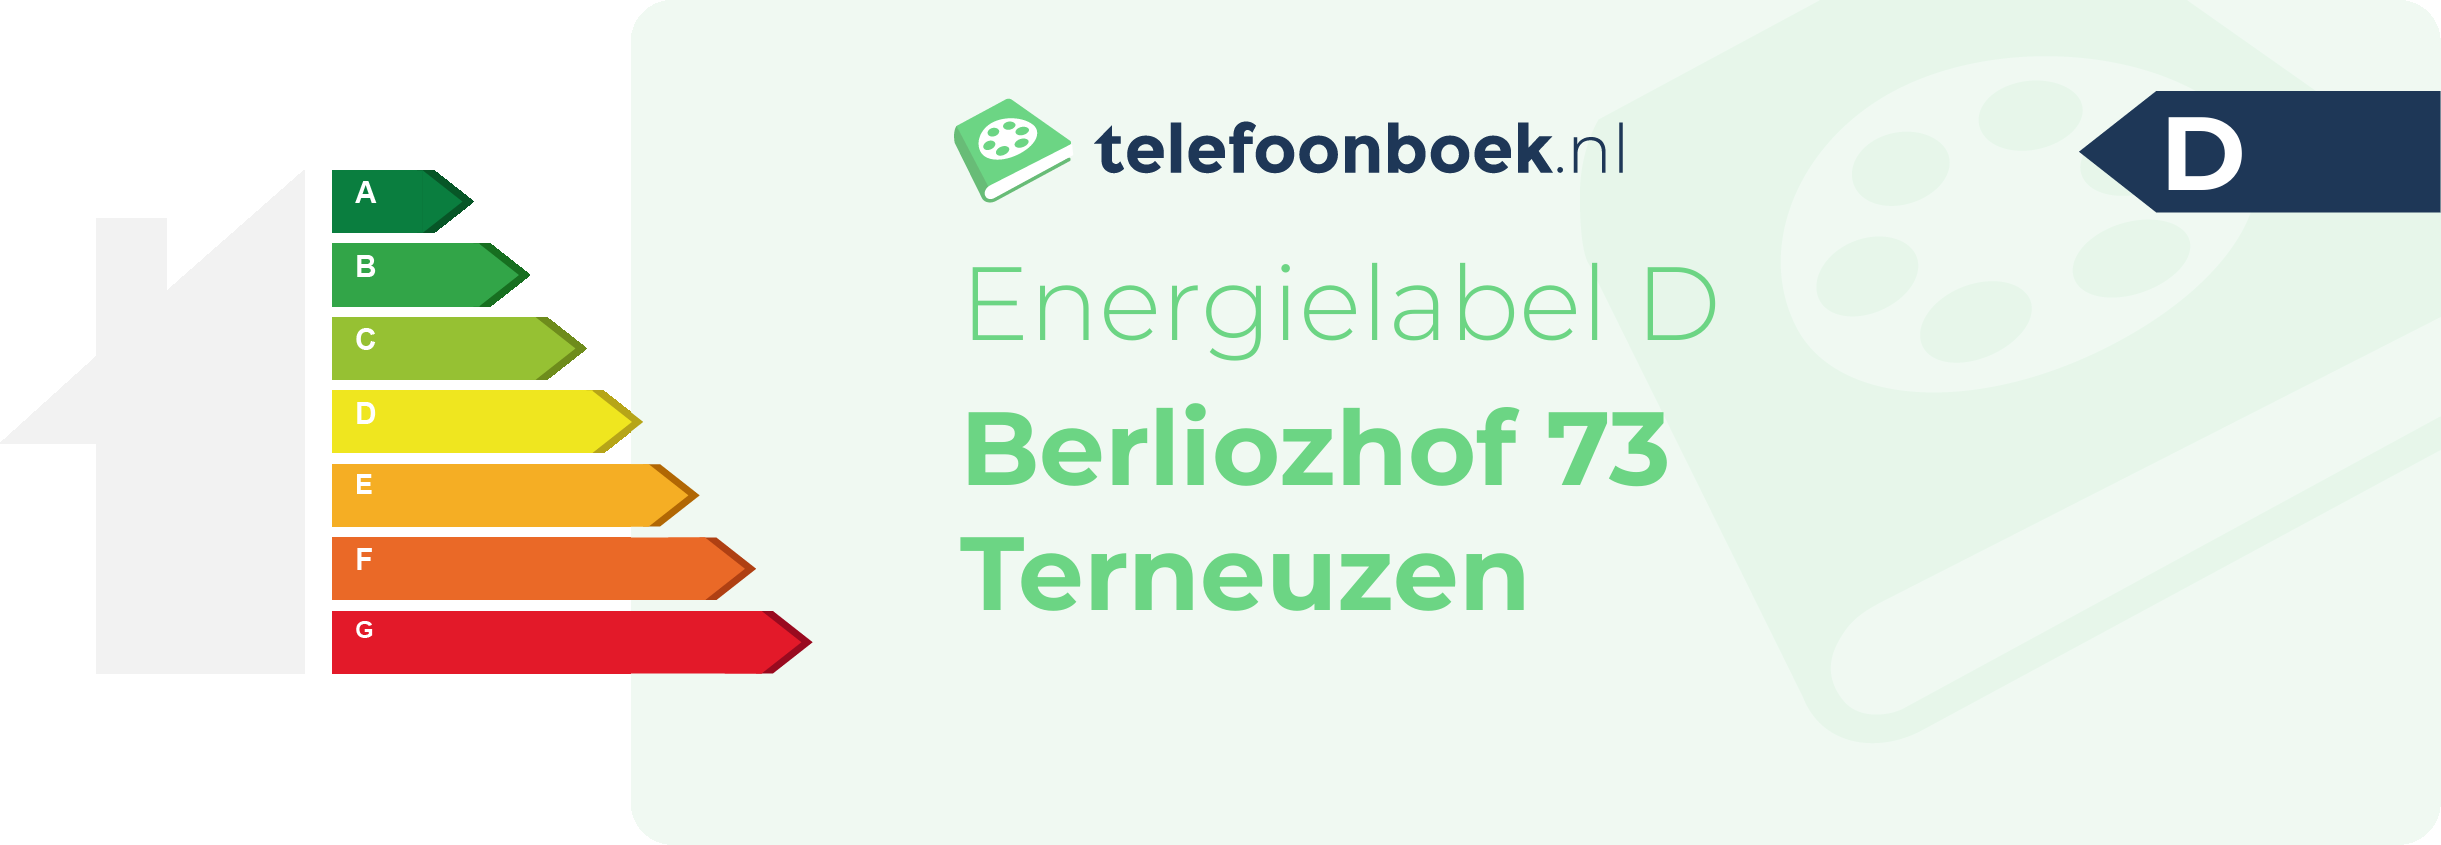 Energielabel Berliozhof 73 Terneuzen